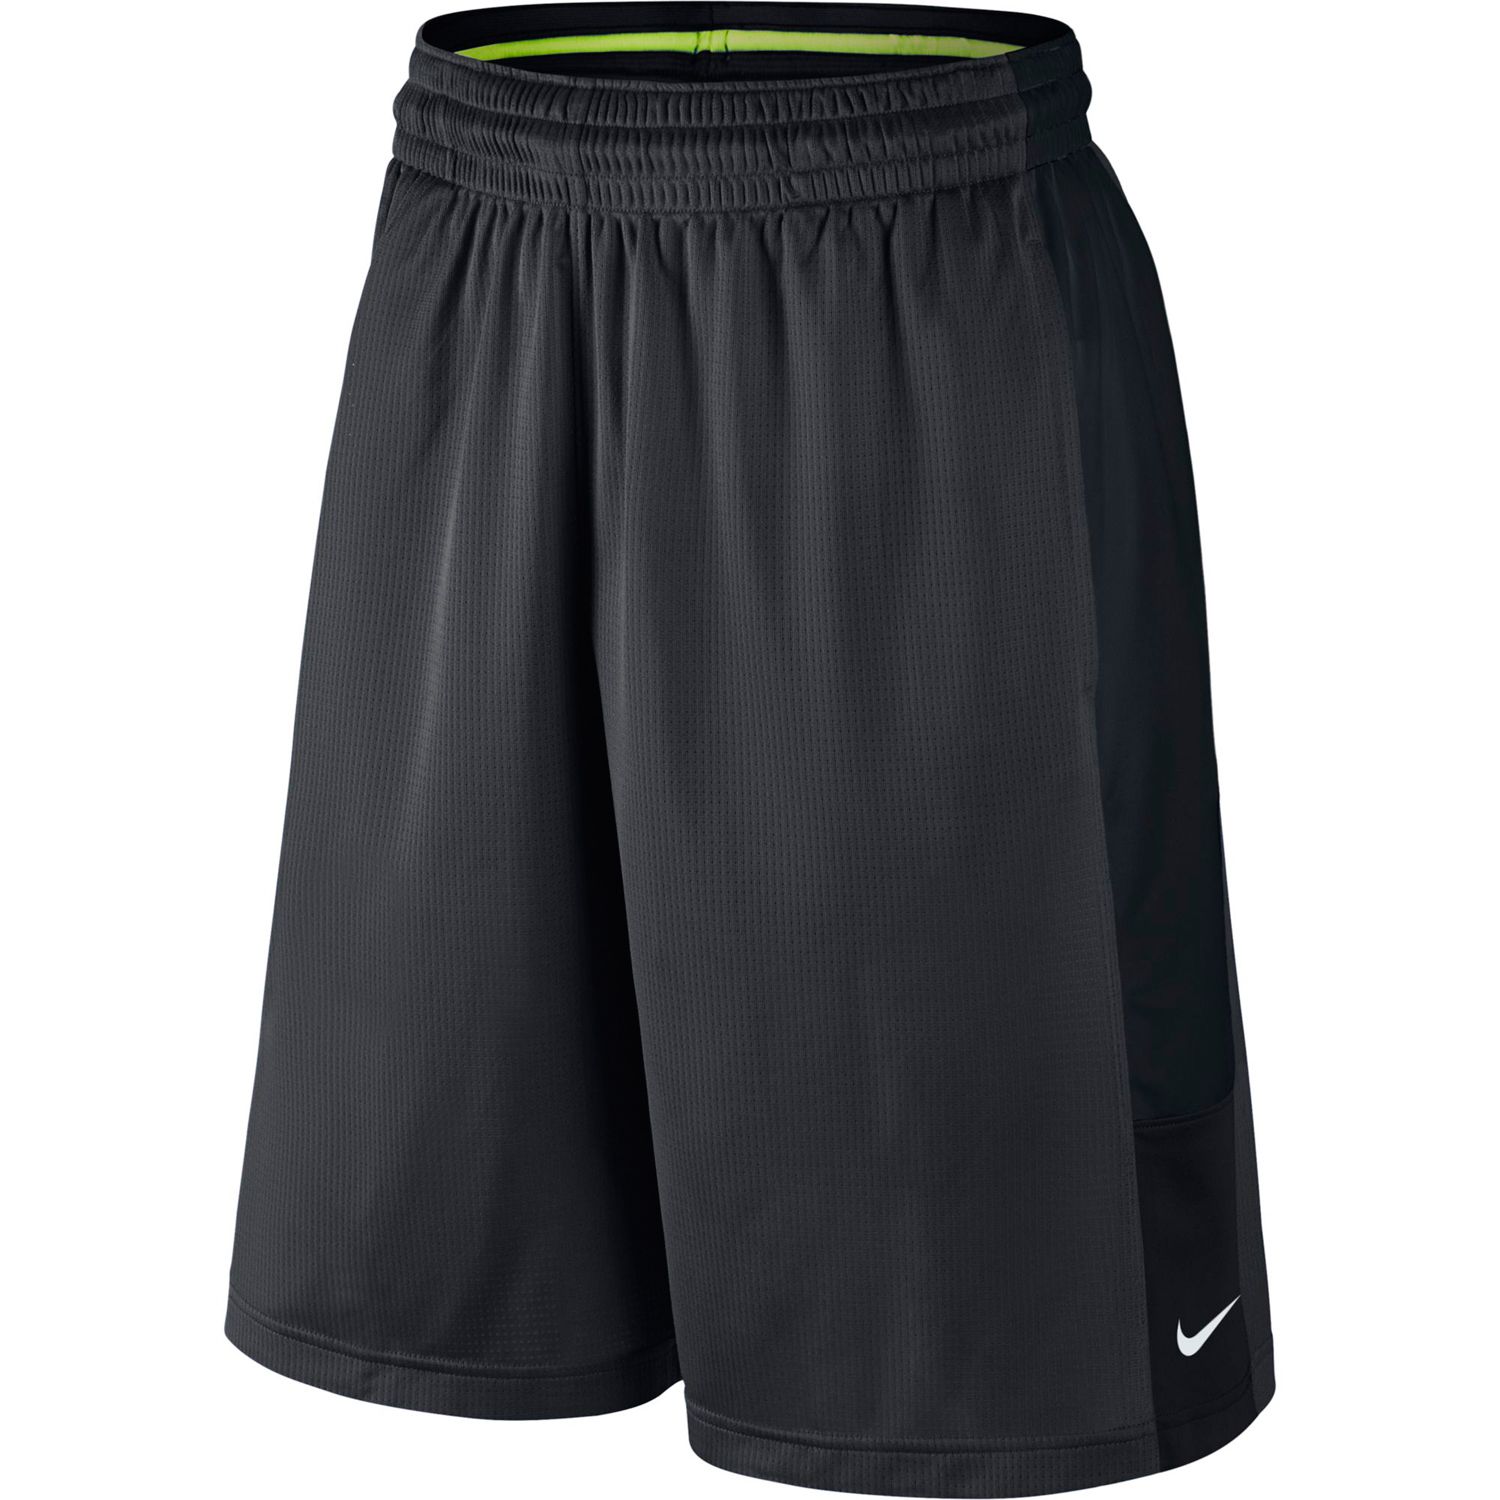 Men's Nike Cash Shorts